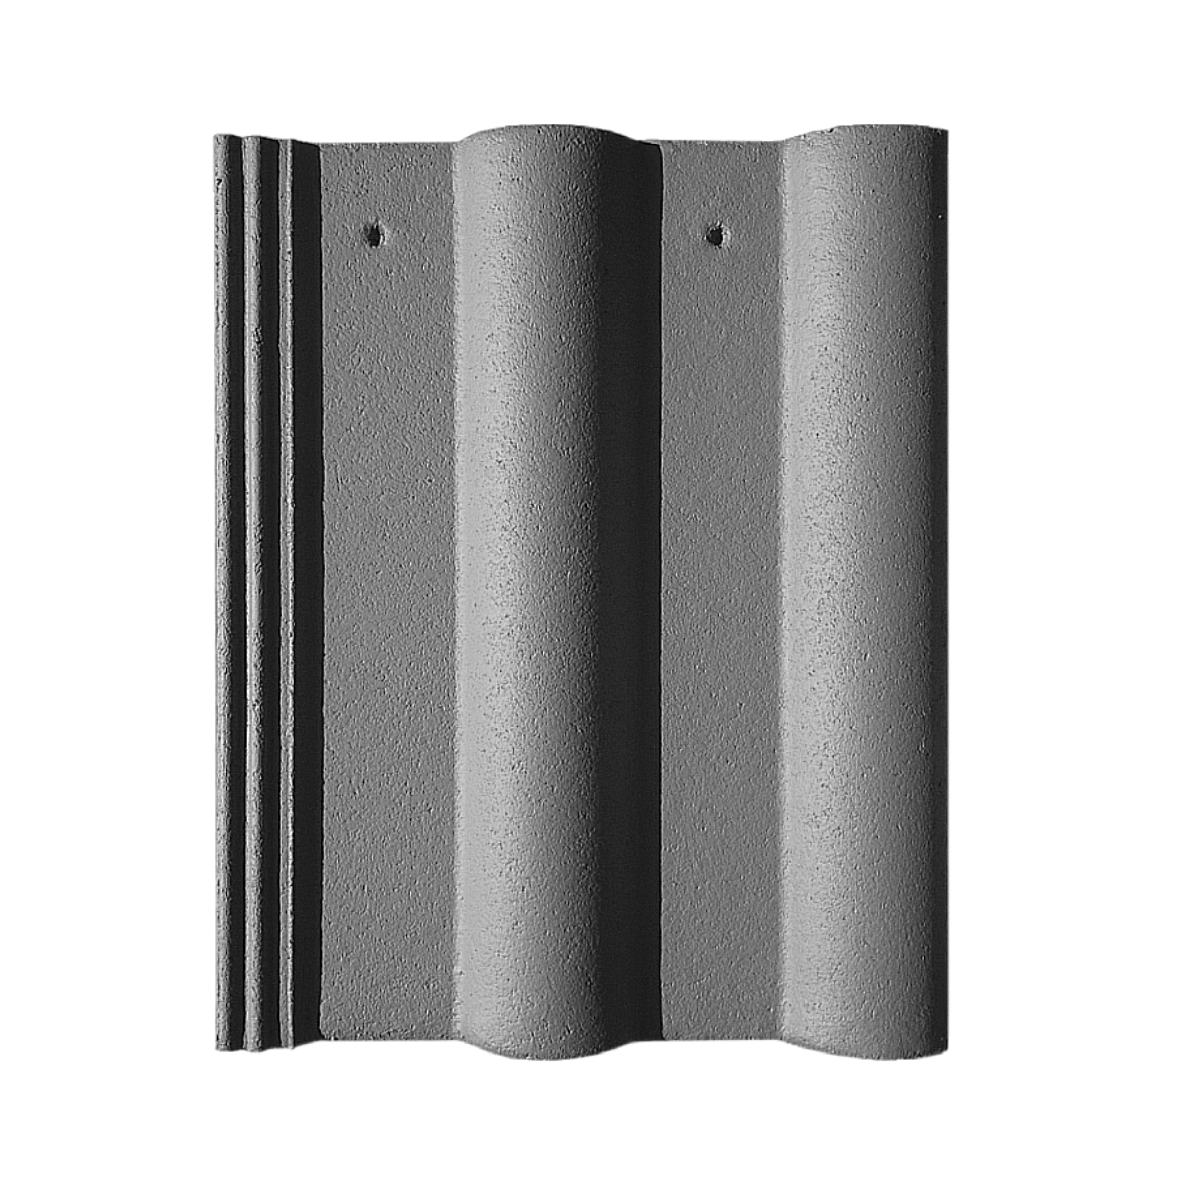 Tigla beton si accesorii - Tigla de beton Nova Double Roman gri antracit 420 x 330 mm, maxbau.ro